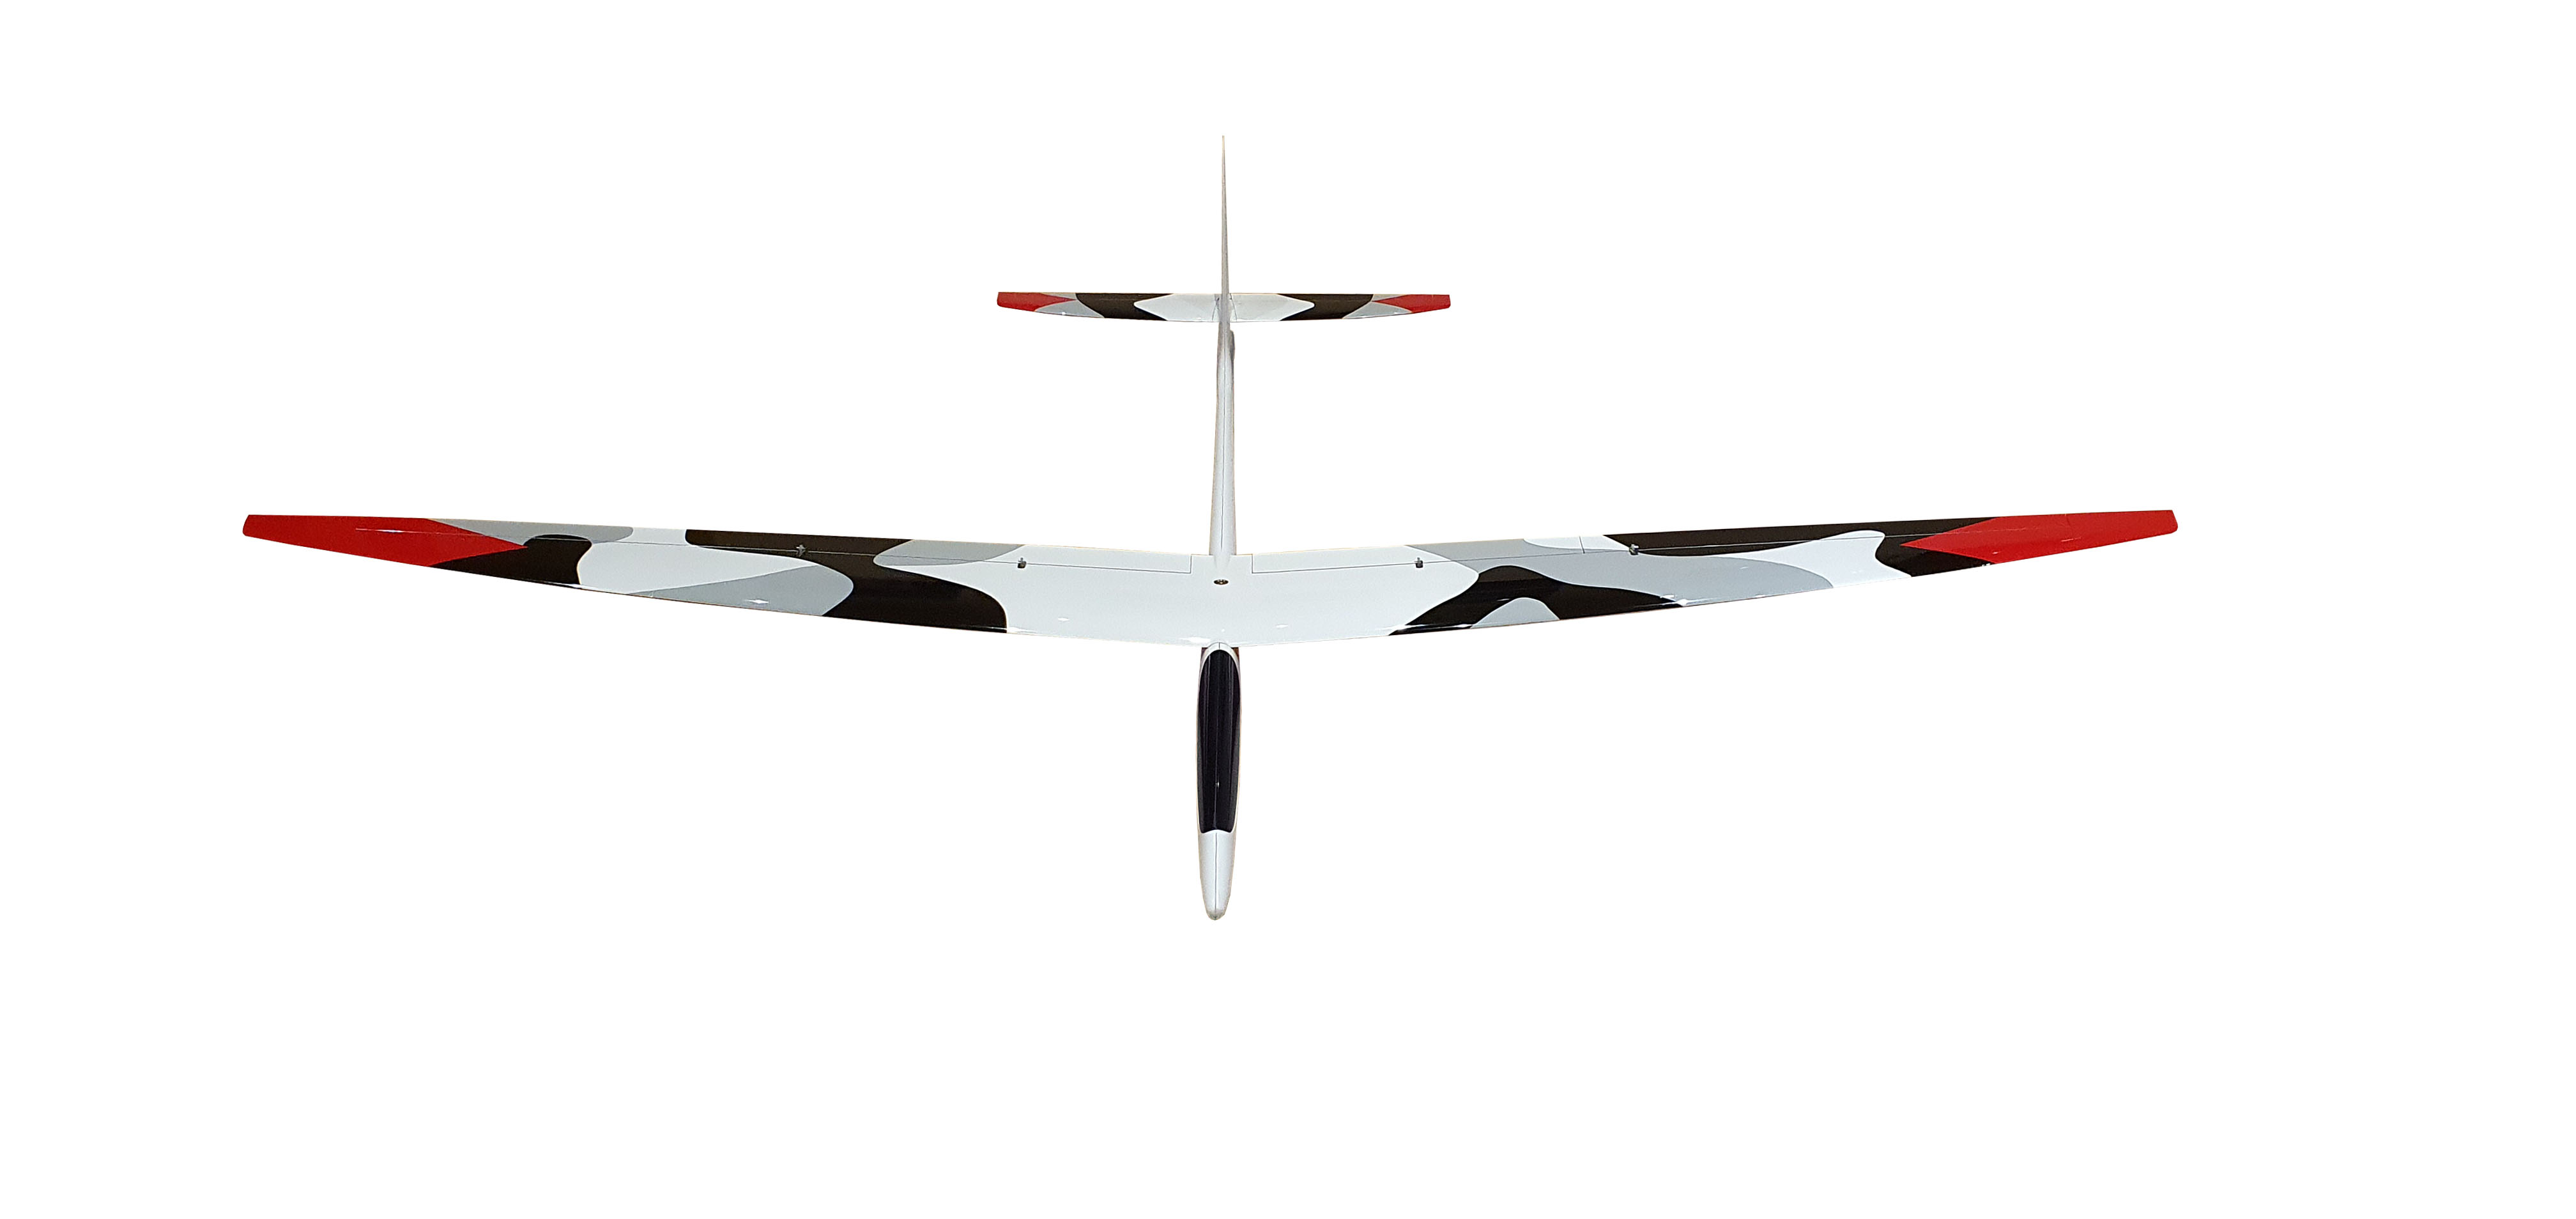 Firebird Aeroic Composite